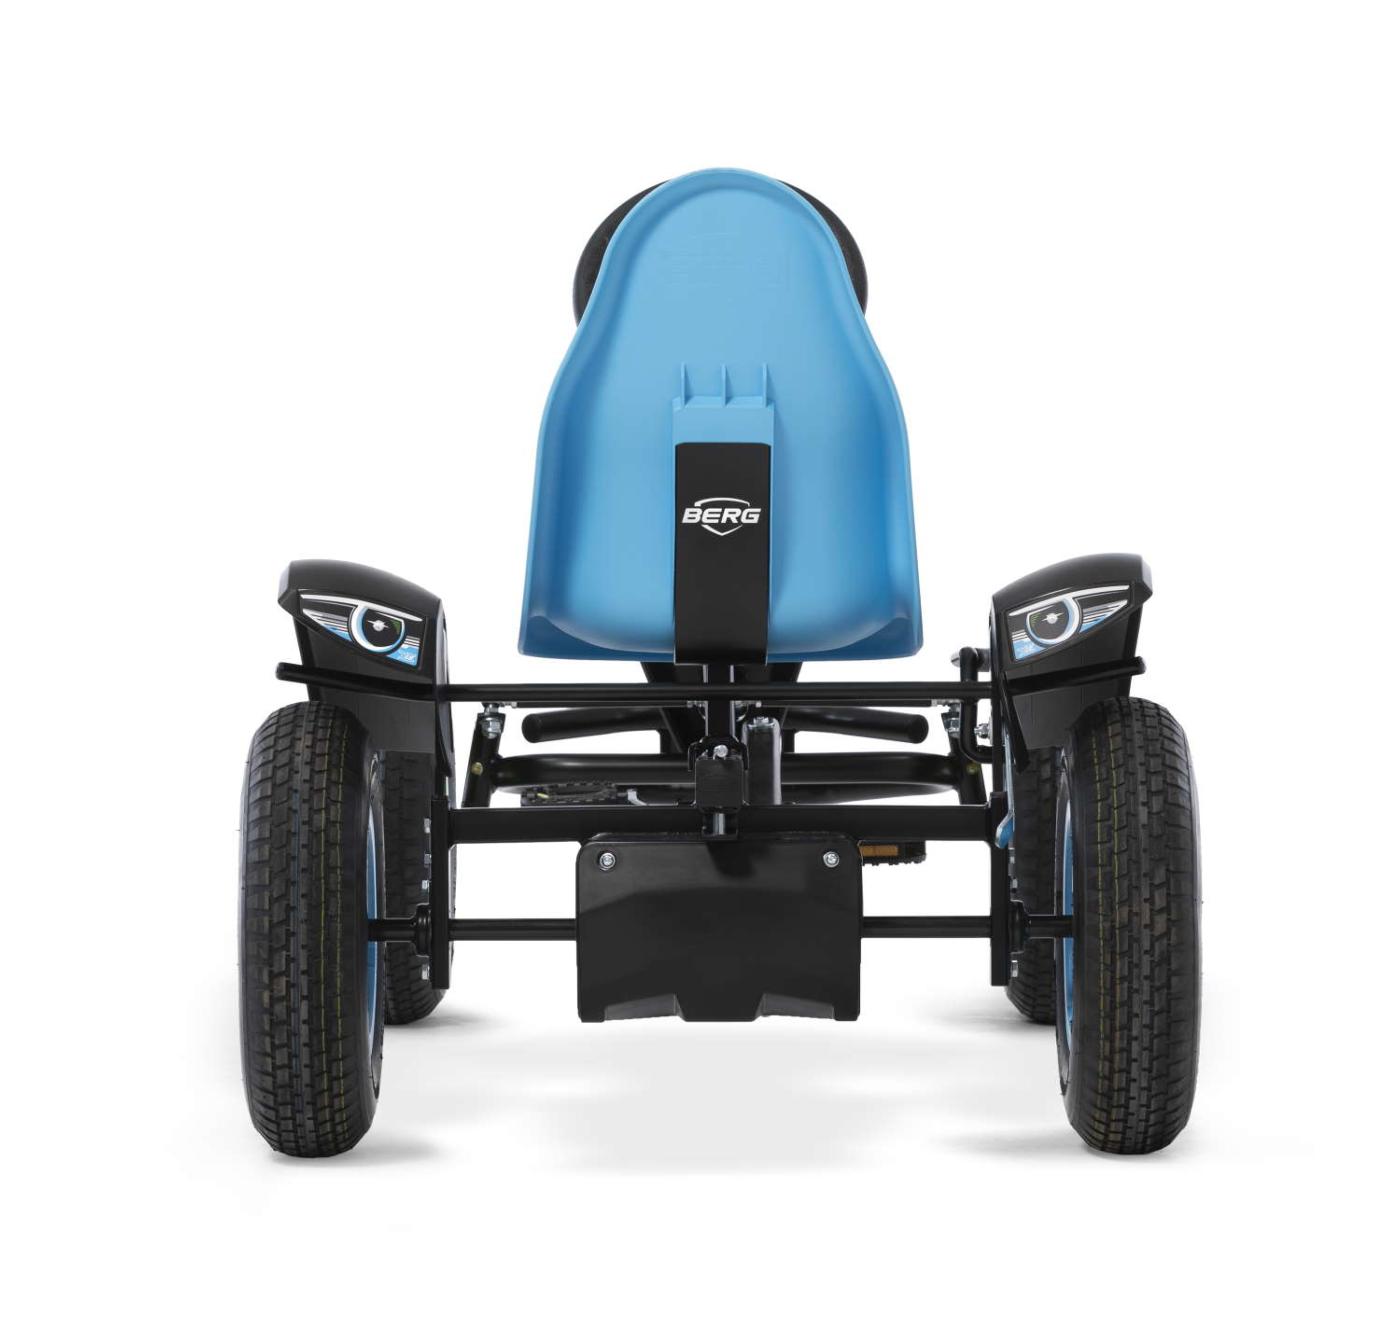 Kart de pedales BERG X-ite BFR para niños de más de 5 años